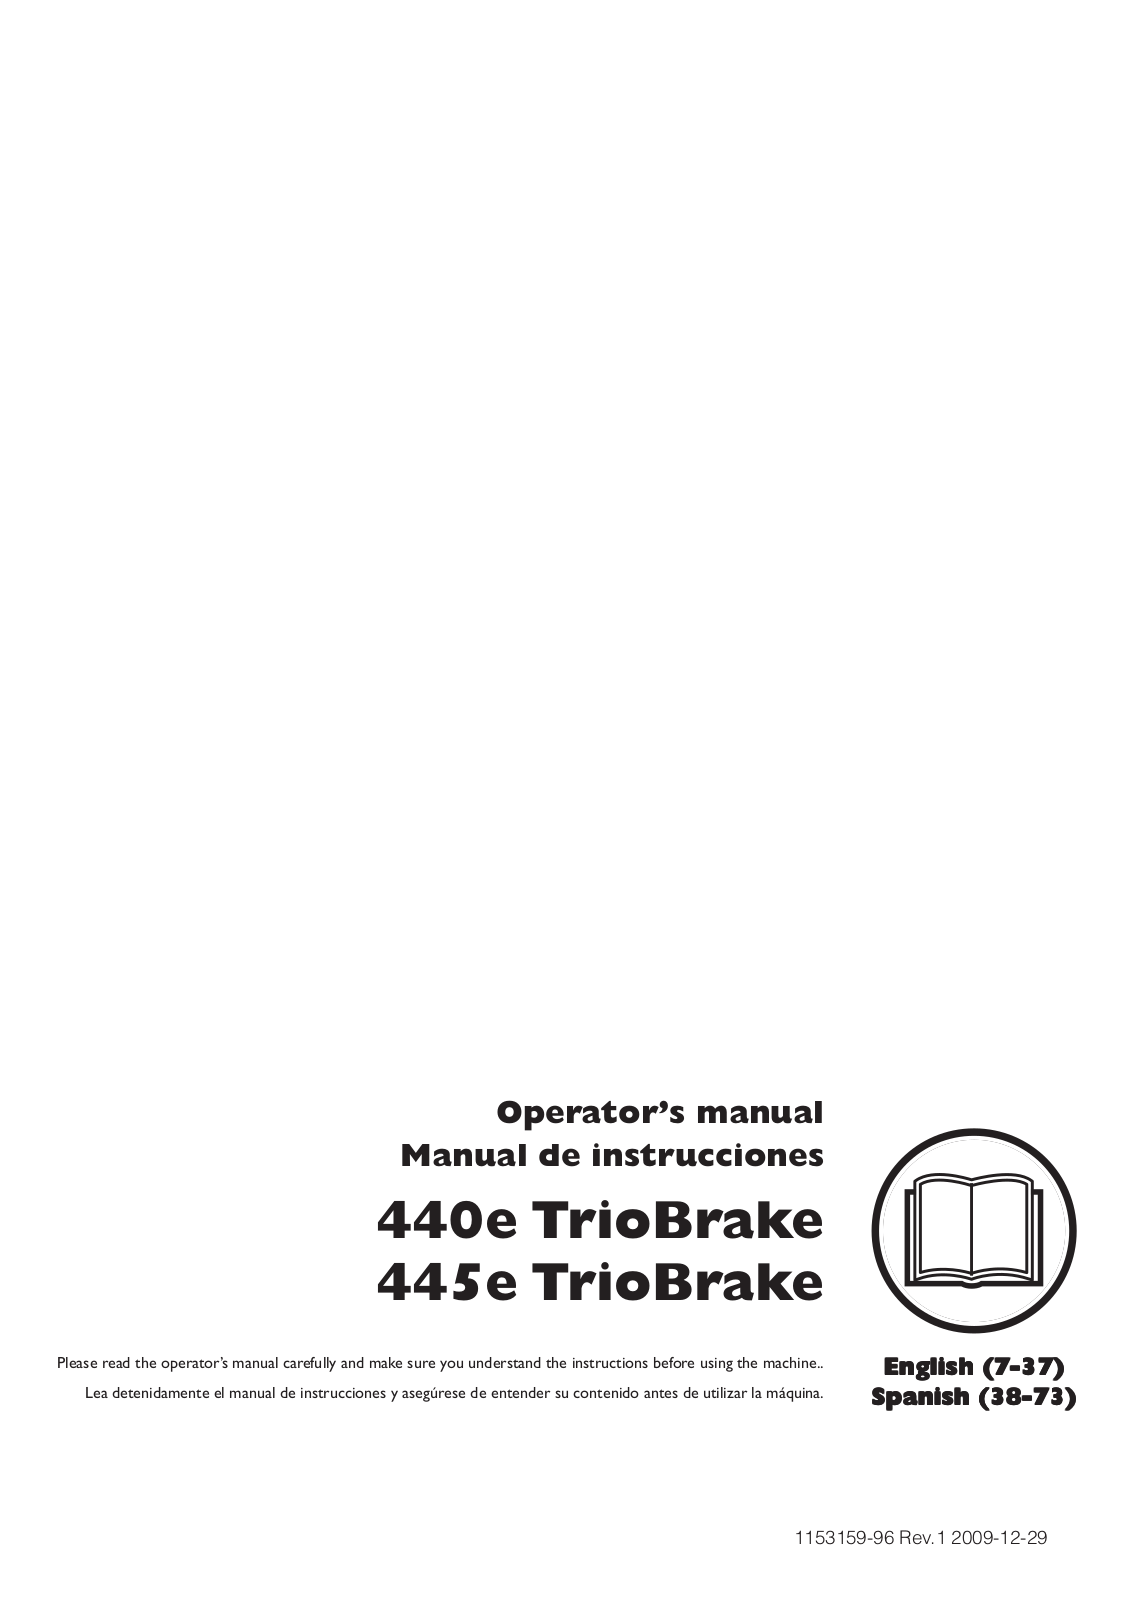 Husqvarna 440 E TRIOBRAKE, 445 E TRIOBRAKE User Manual